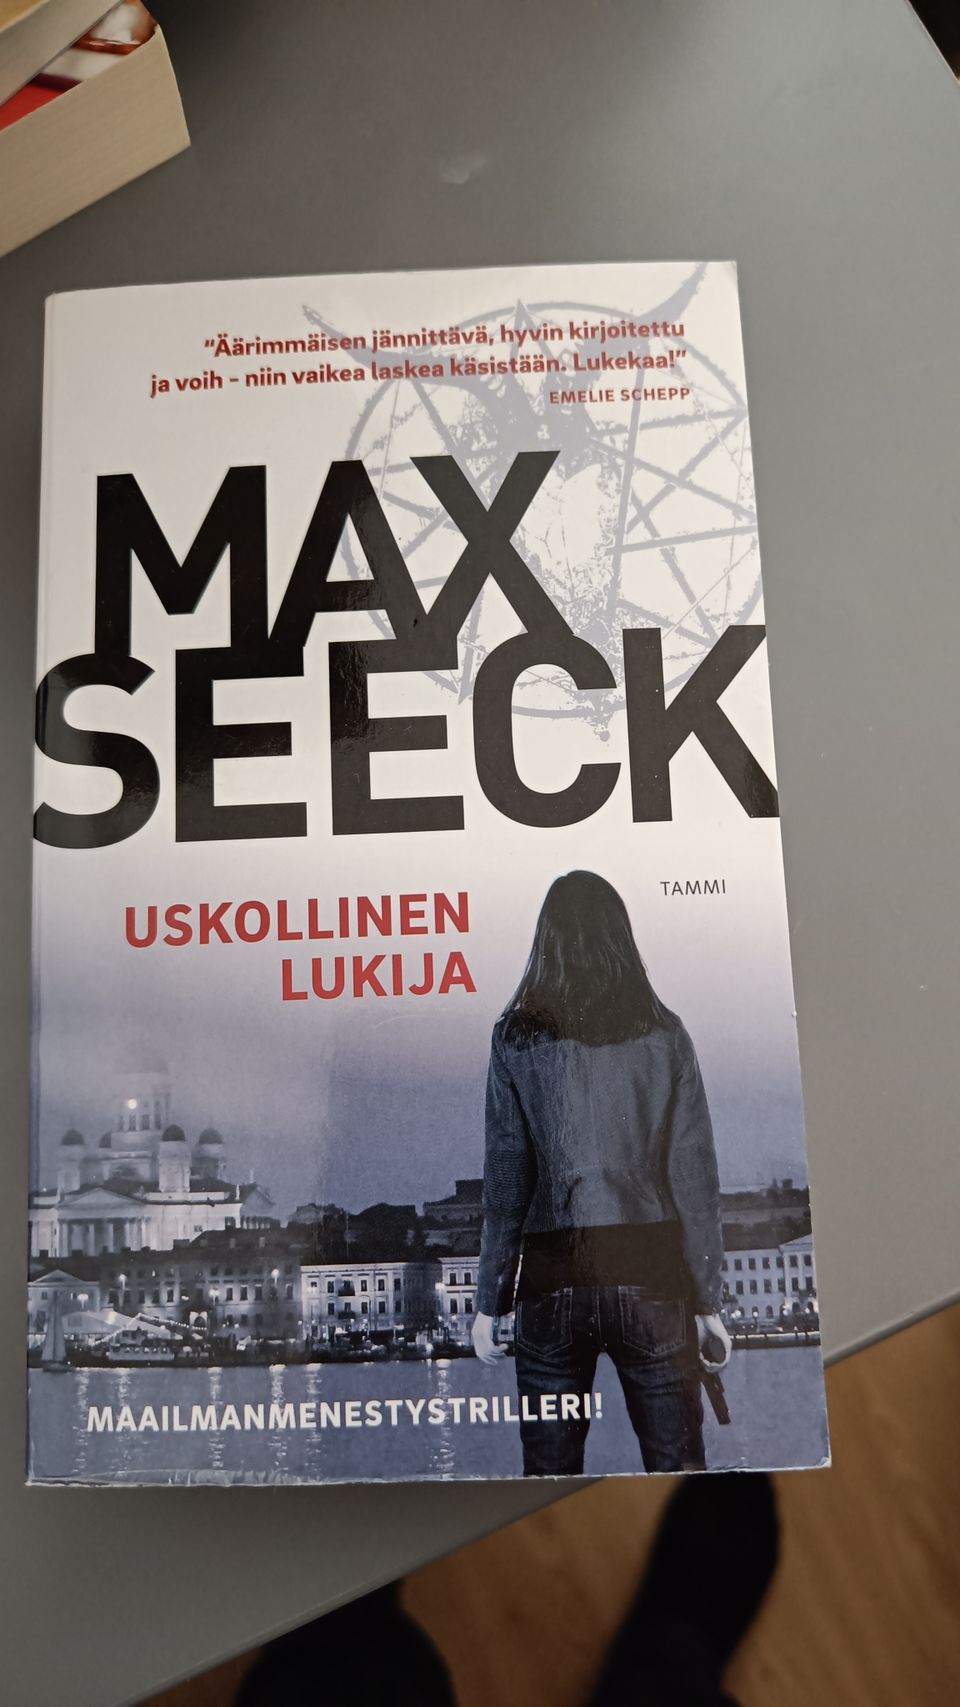 Uskollinen lukija - Max Seeck